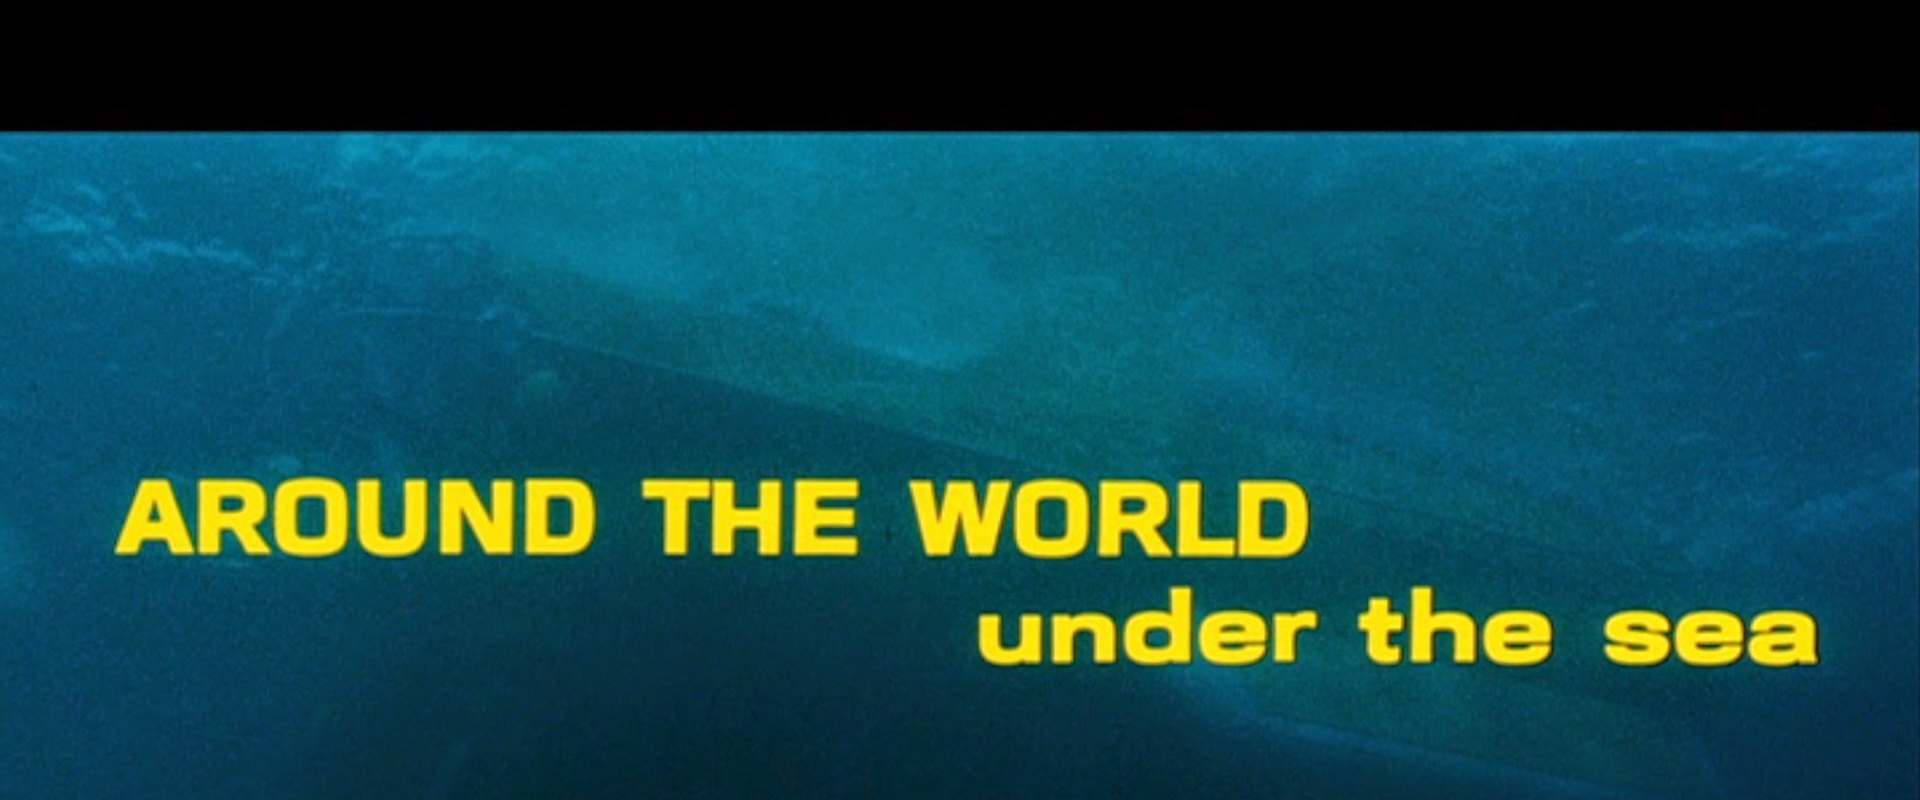 Around the World Under the Sea background 1